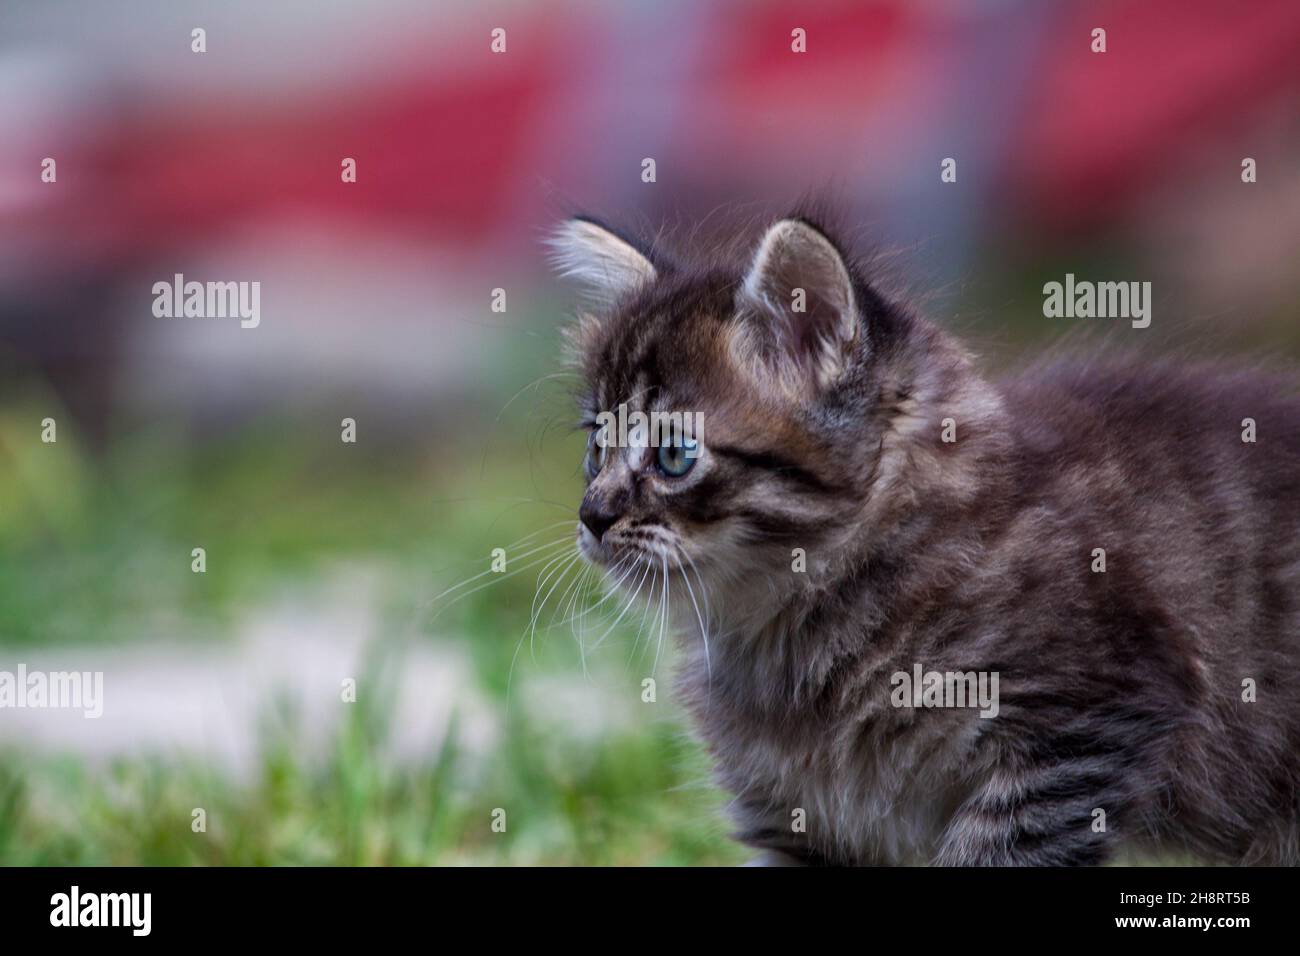 gatito asustado en la hierba verde. El gatito se escapó de casa y se perdió en el parque. Un gatito a rayas siberianas explora el mundo desconocido en la calle. Foto de stock